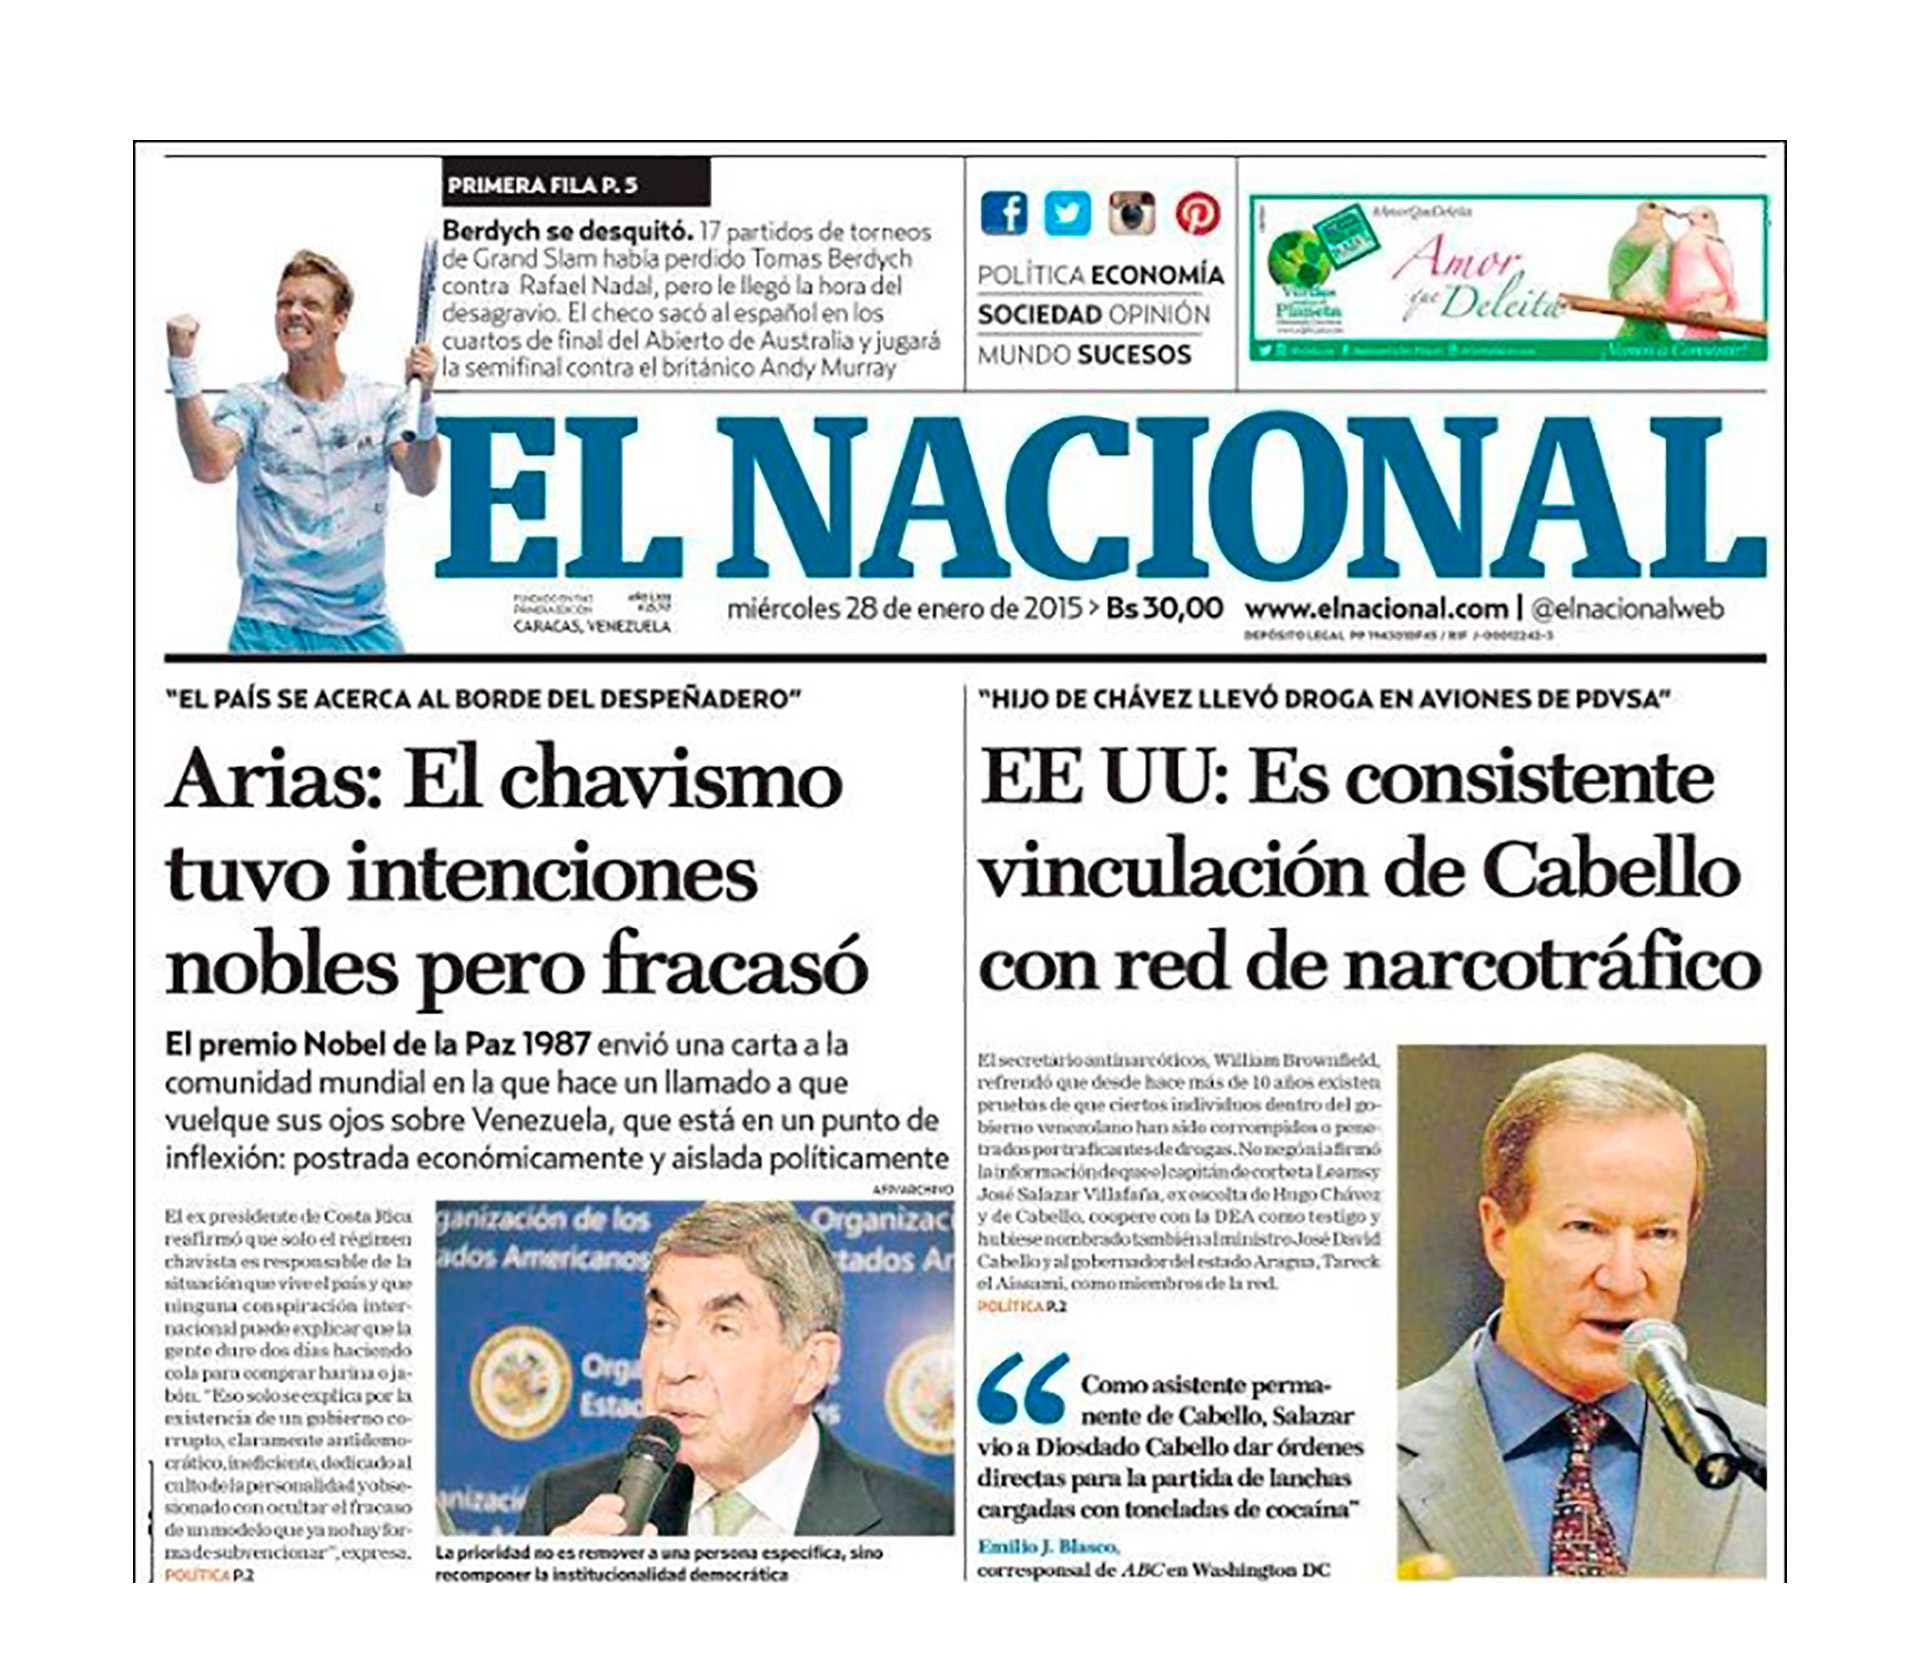 La portada de El Nacional del 28 de enero de 2015, mostrando la nota que irritó a Cabello